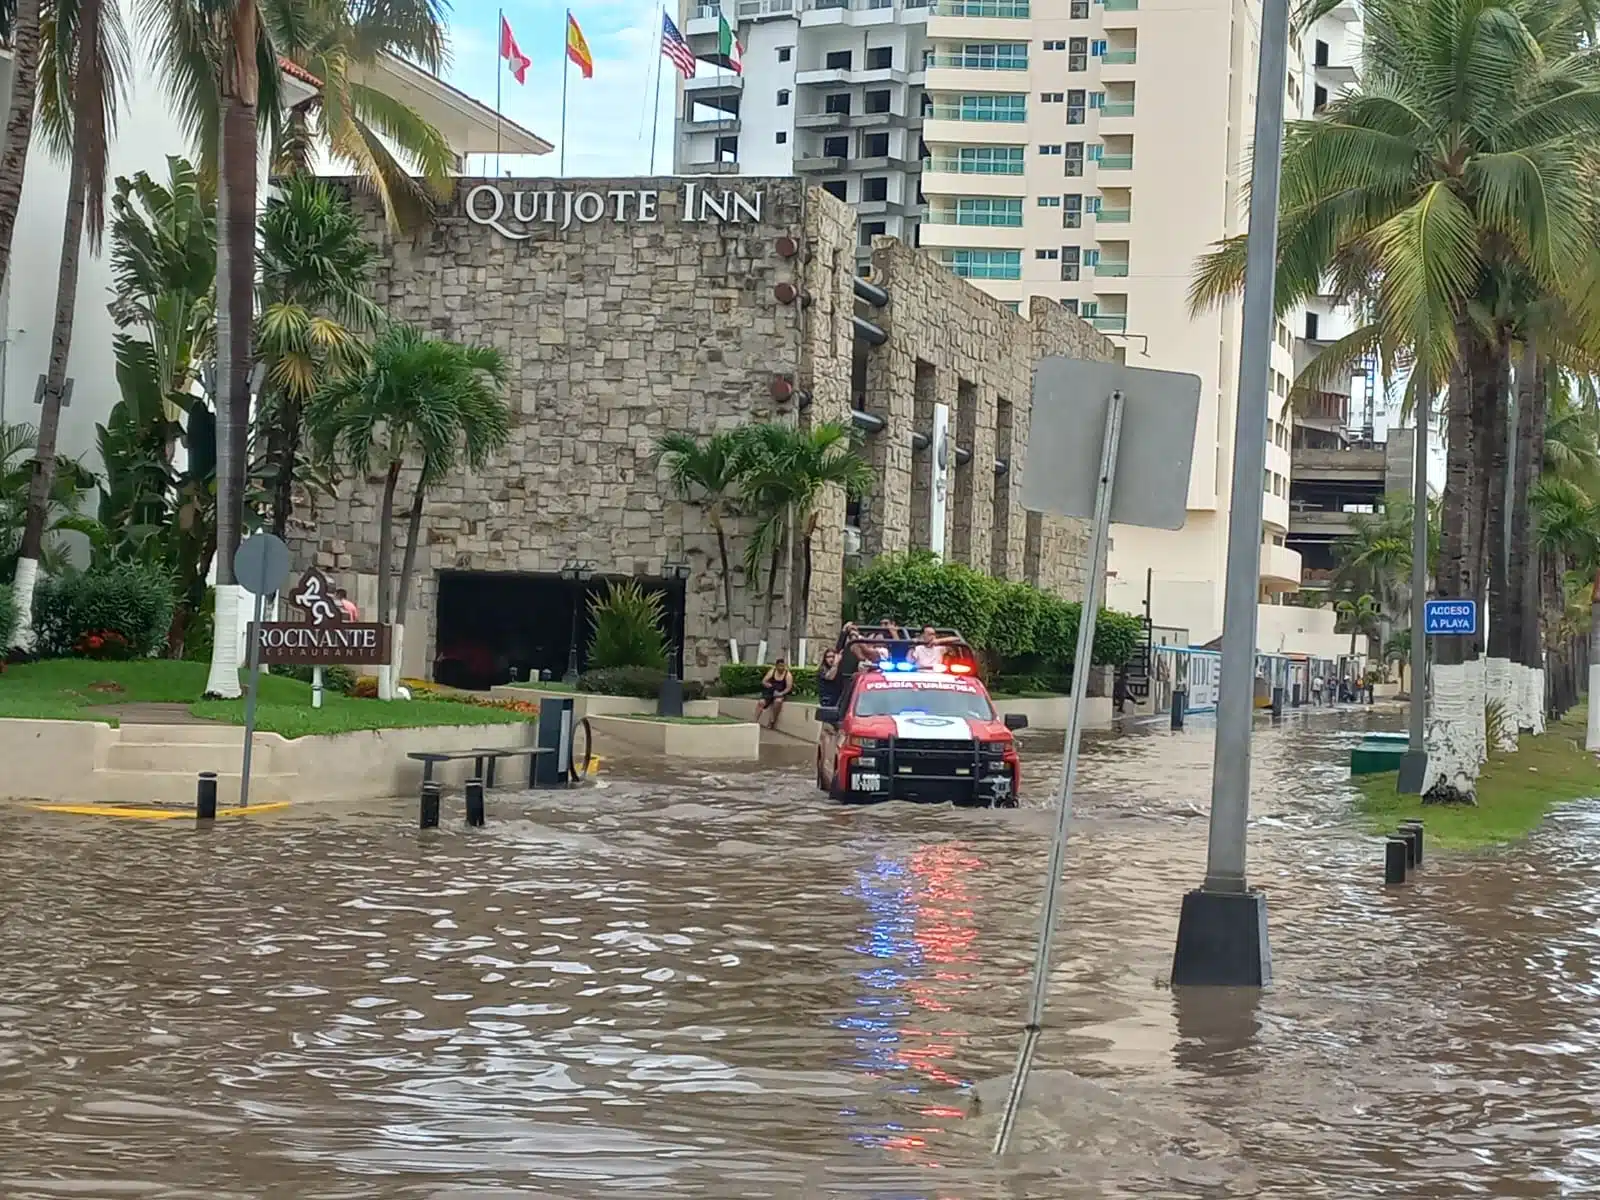 Una camioneta con personas arriba que va pasando por una calle inundada, edificios, palmeras y postes al fondo